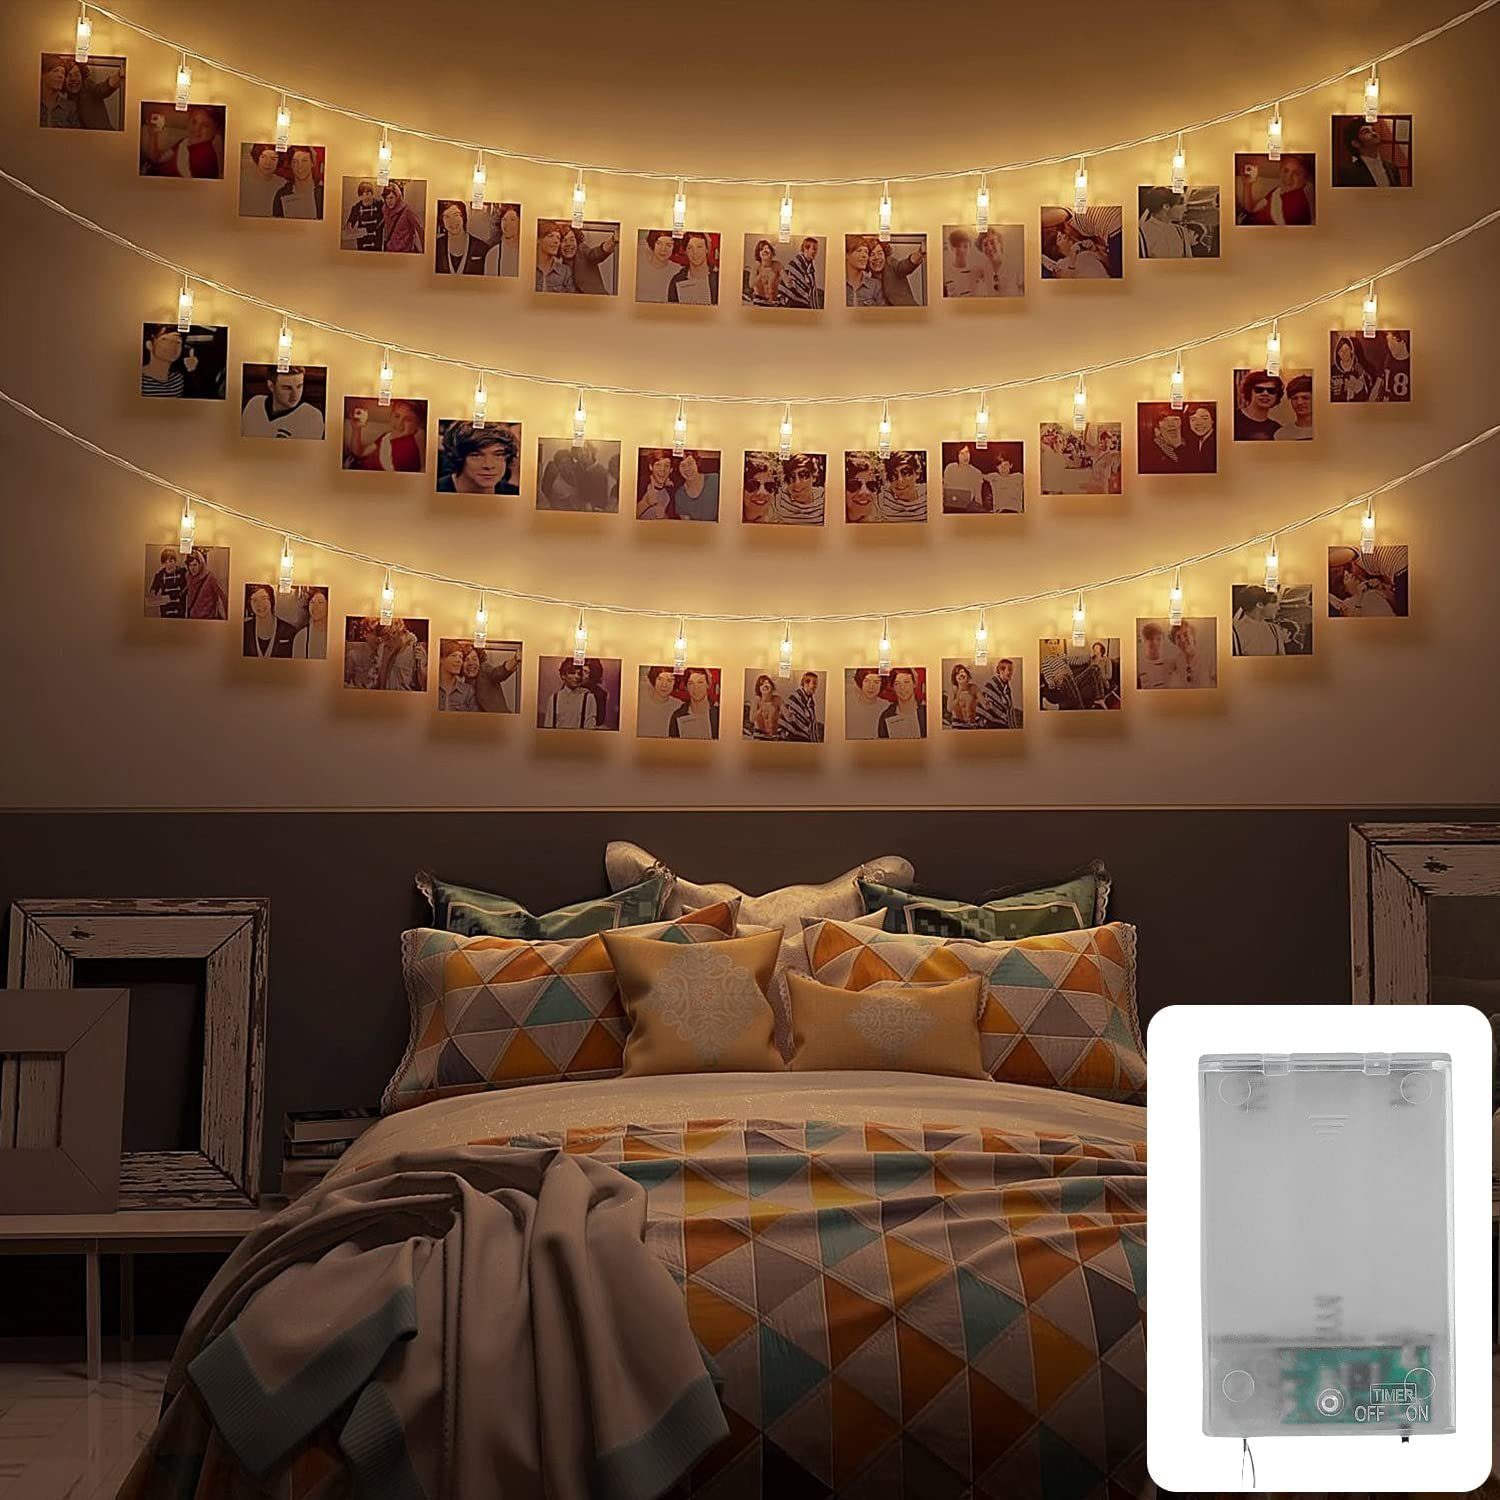 COZY HOME LED-Lichterkette Fotoclip Lichterkette - Batterie und Stecker, 30 Fotoclip LEDs I Timer-Funktion I 6 Meter I Warmweiße LED